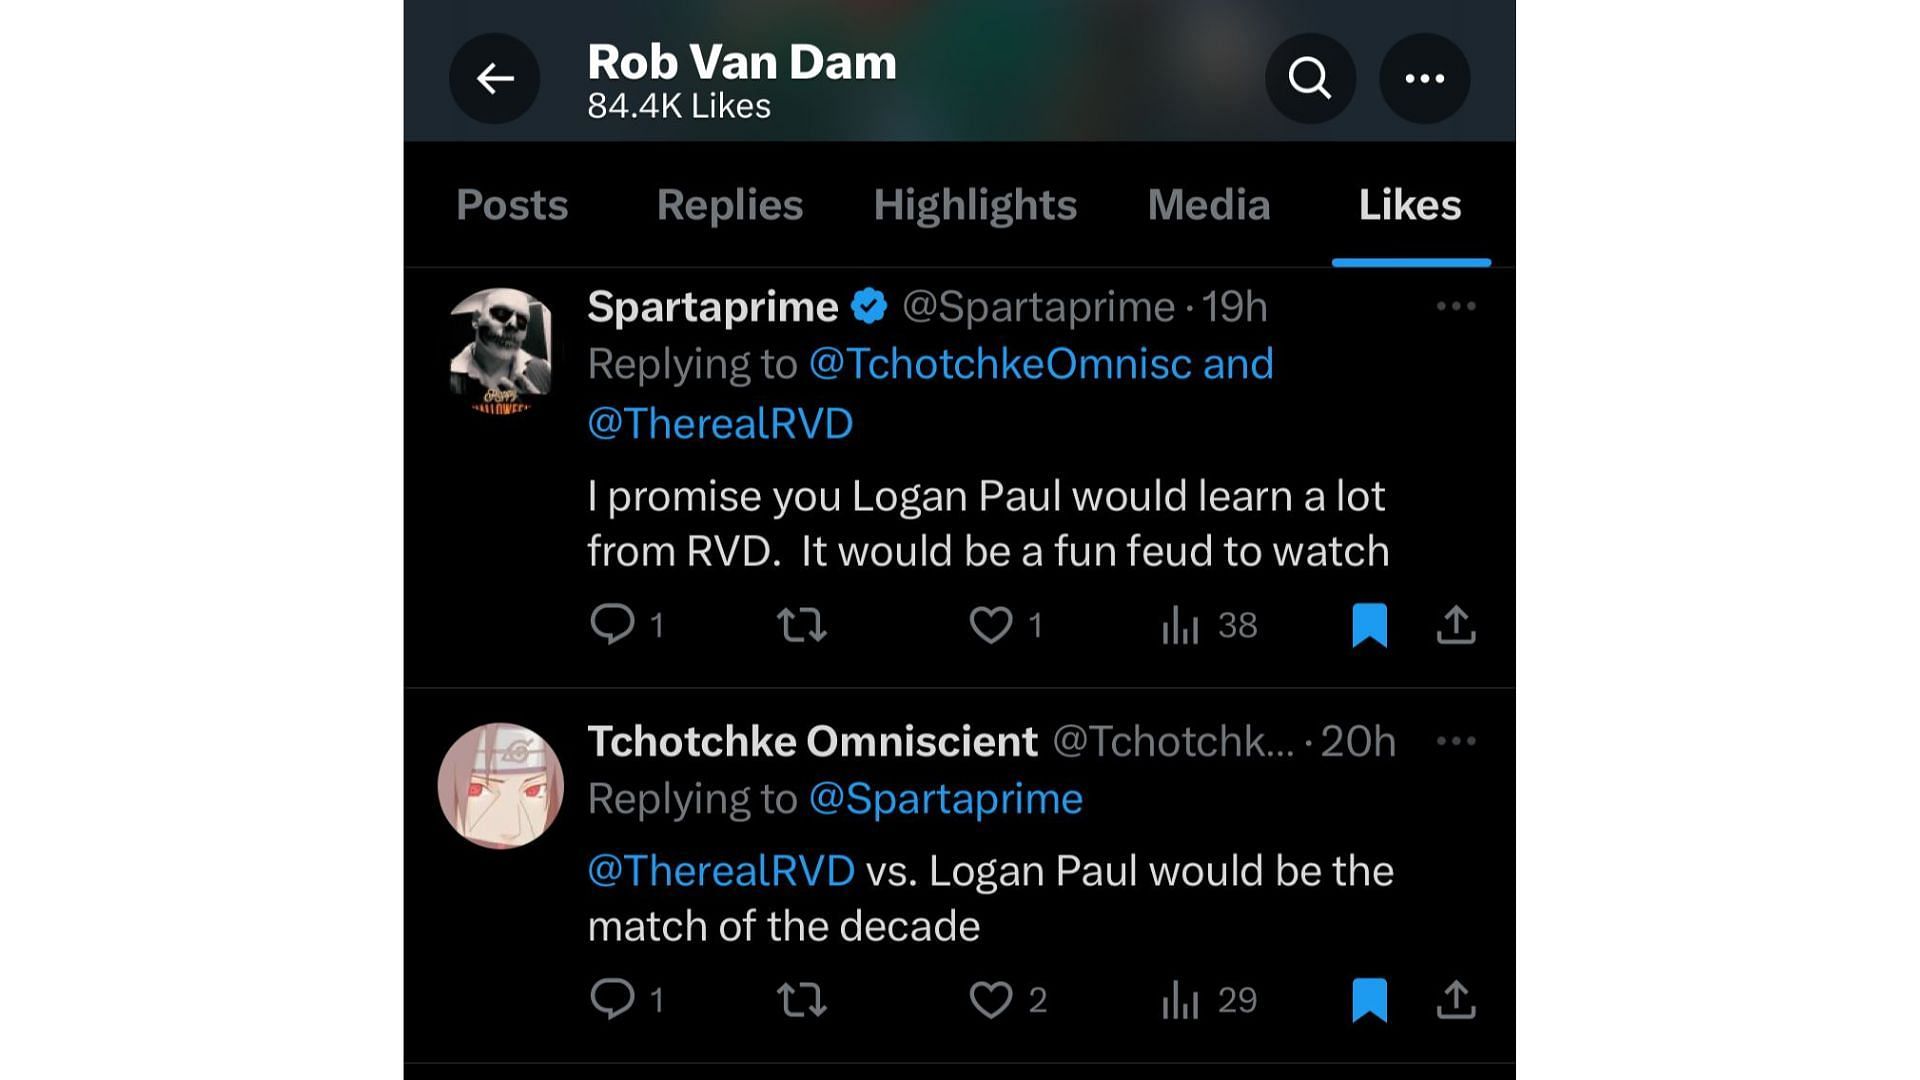 RVD liked fan tweets regarding a feud with Logan Paul.